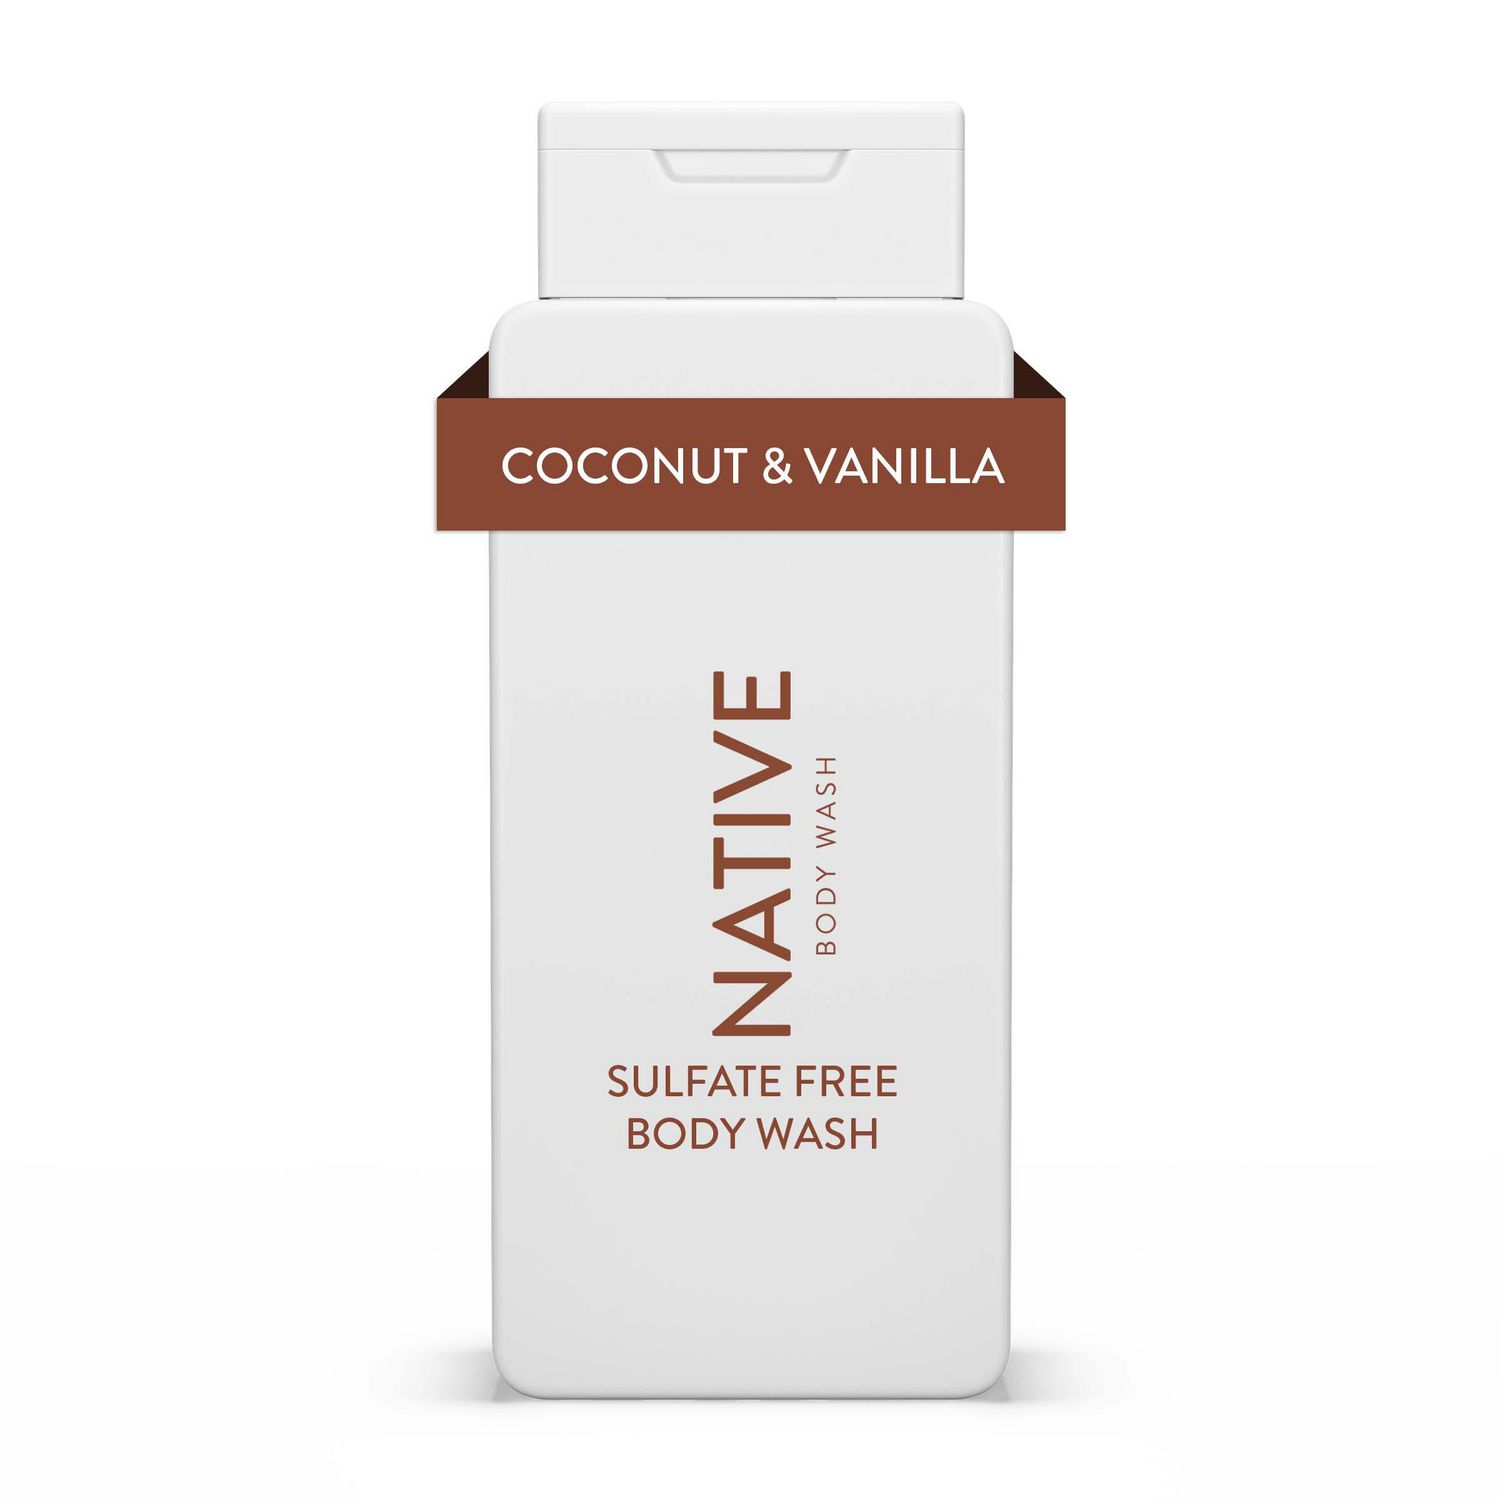 Native Natural Body Wash, Coconut & Vanilla, Sulfate Free, Paraben